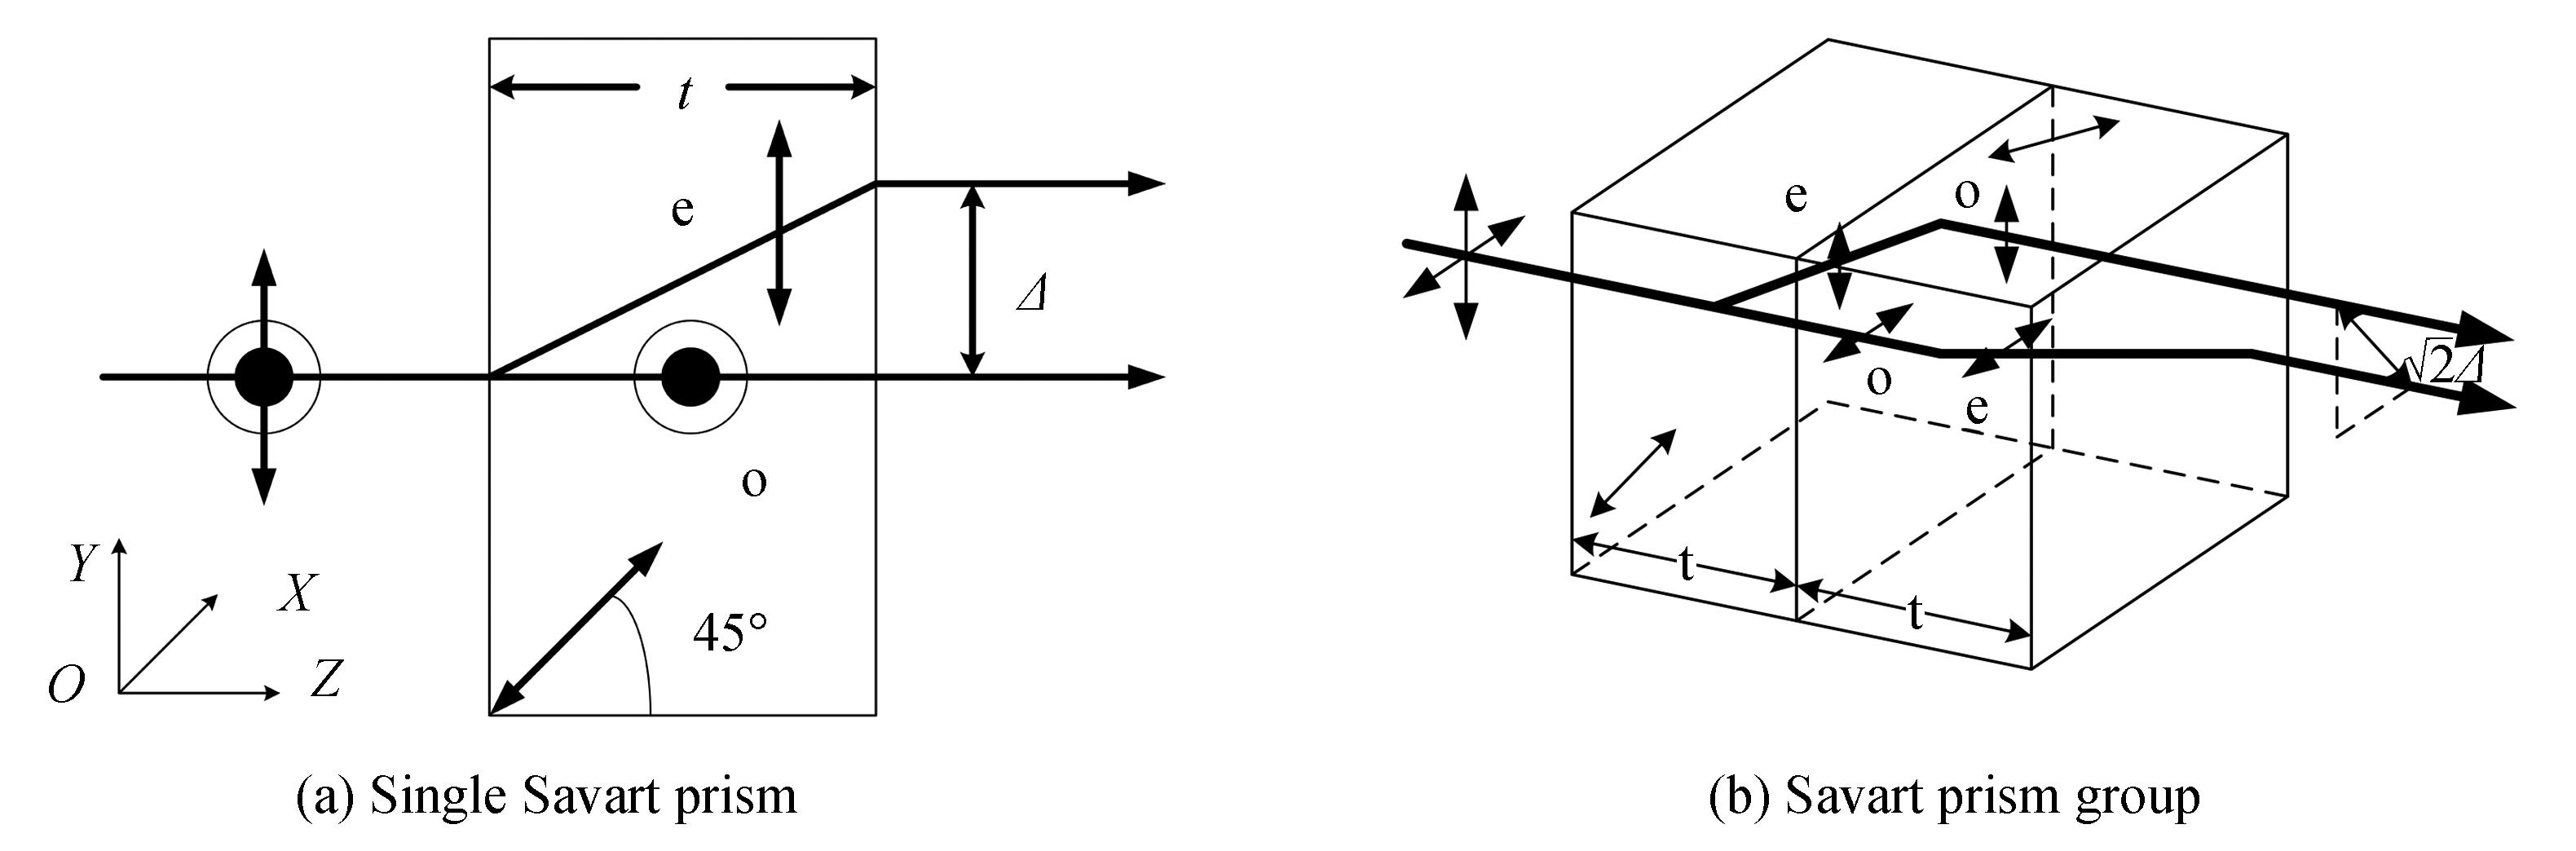 Schematic diagram of Savart prism